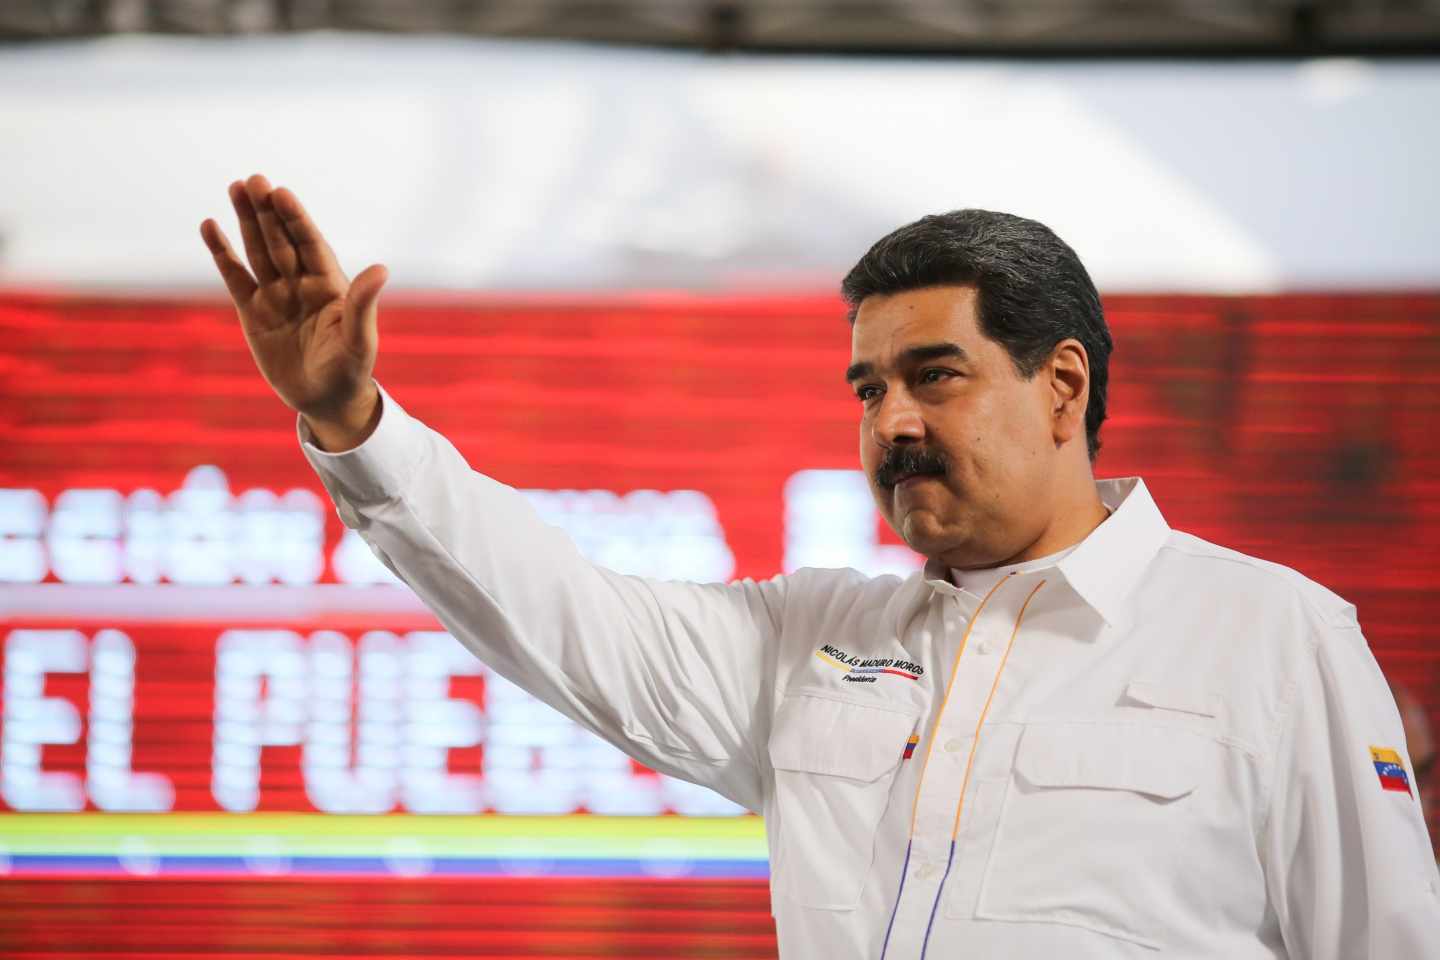 El líder chavista, Nicolás Maduro, ante sus seguidores.